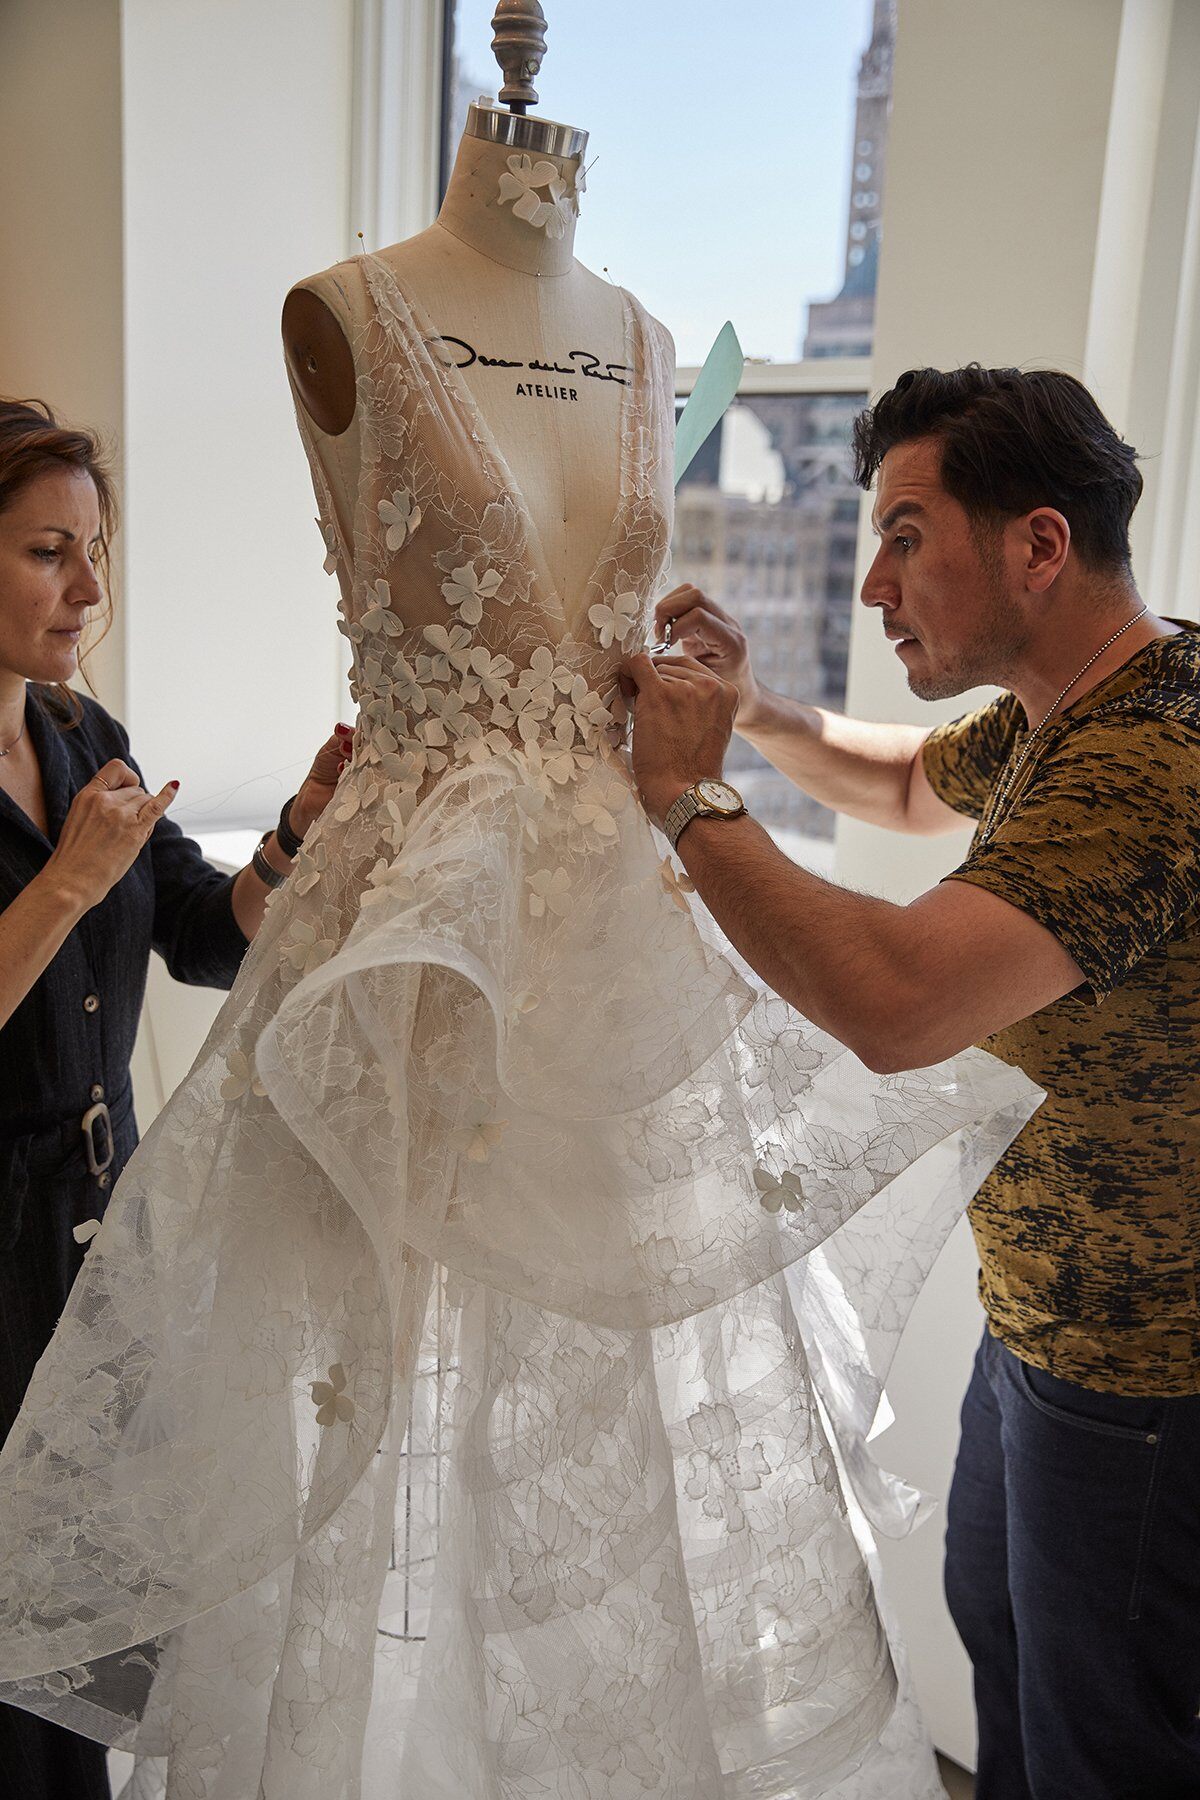 Behind the scenes at the Oscar de la Renta Bridal Atelier